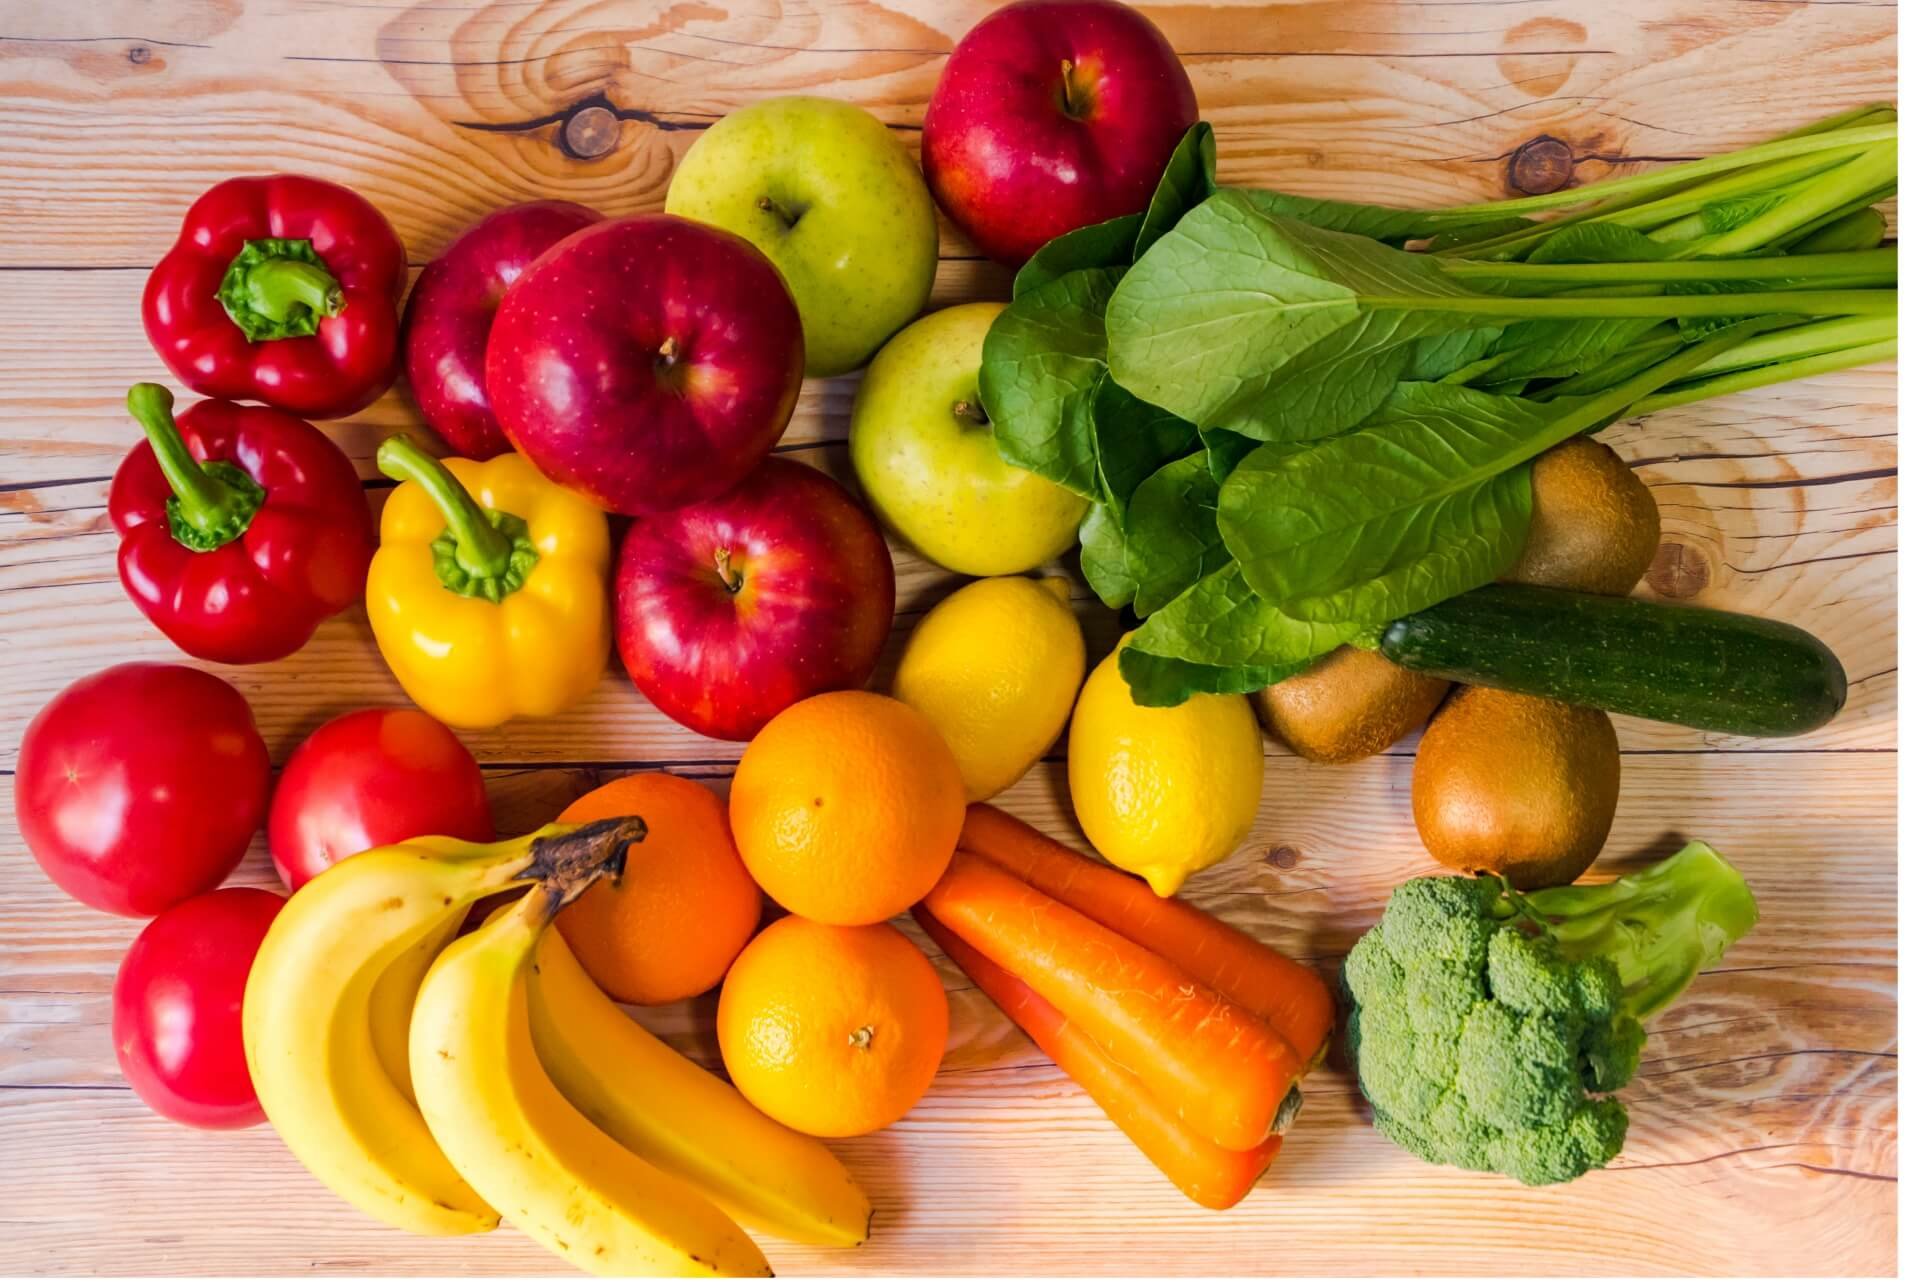 Кашам фруктам овощам. Овощи и фрукты. Свежие овощи и фрукты. Немытые овощи и фрукты. Разнообразие овощей.